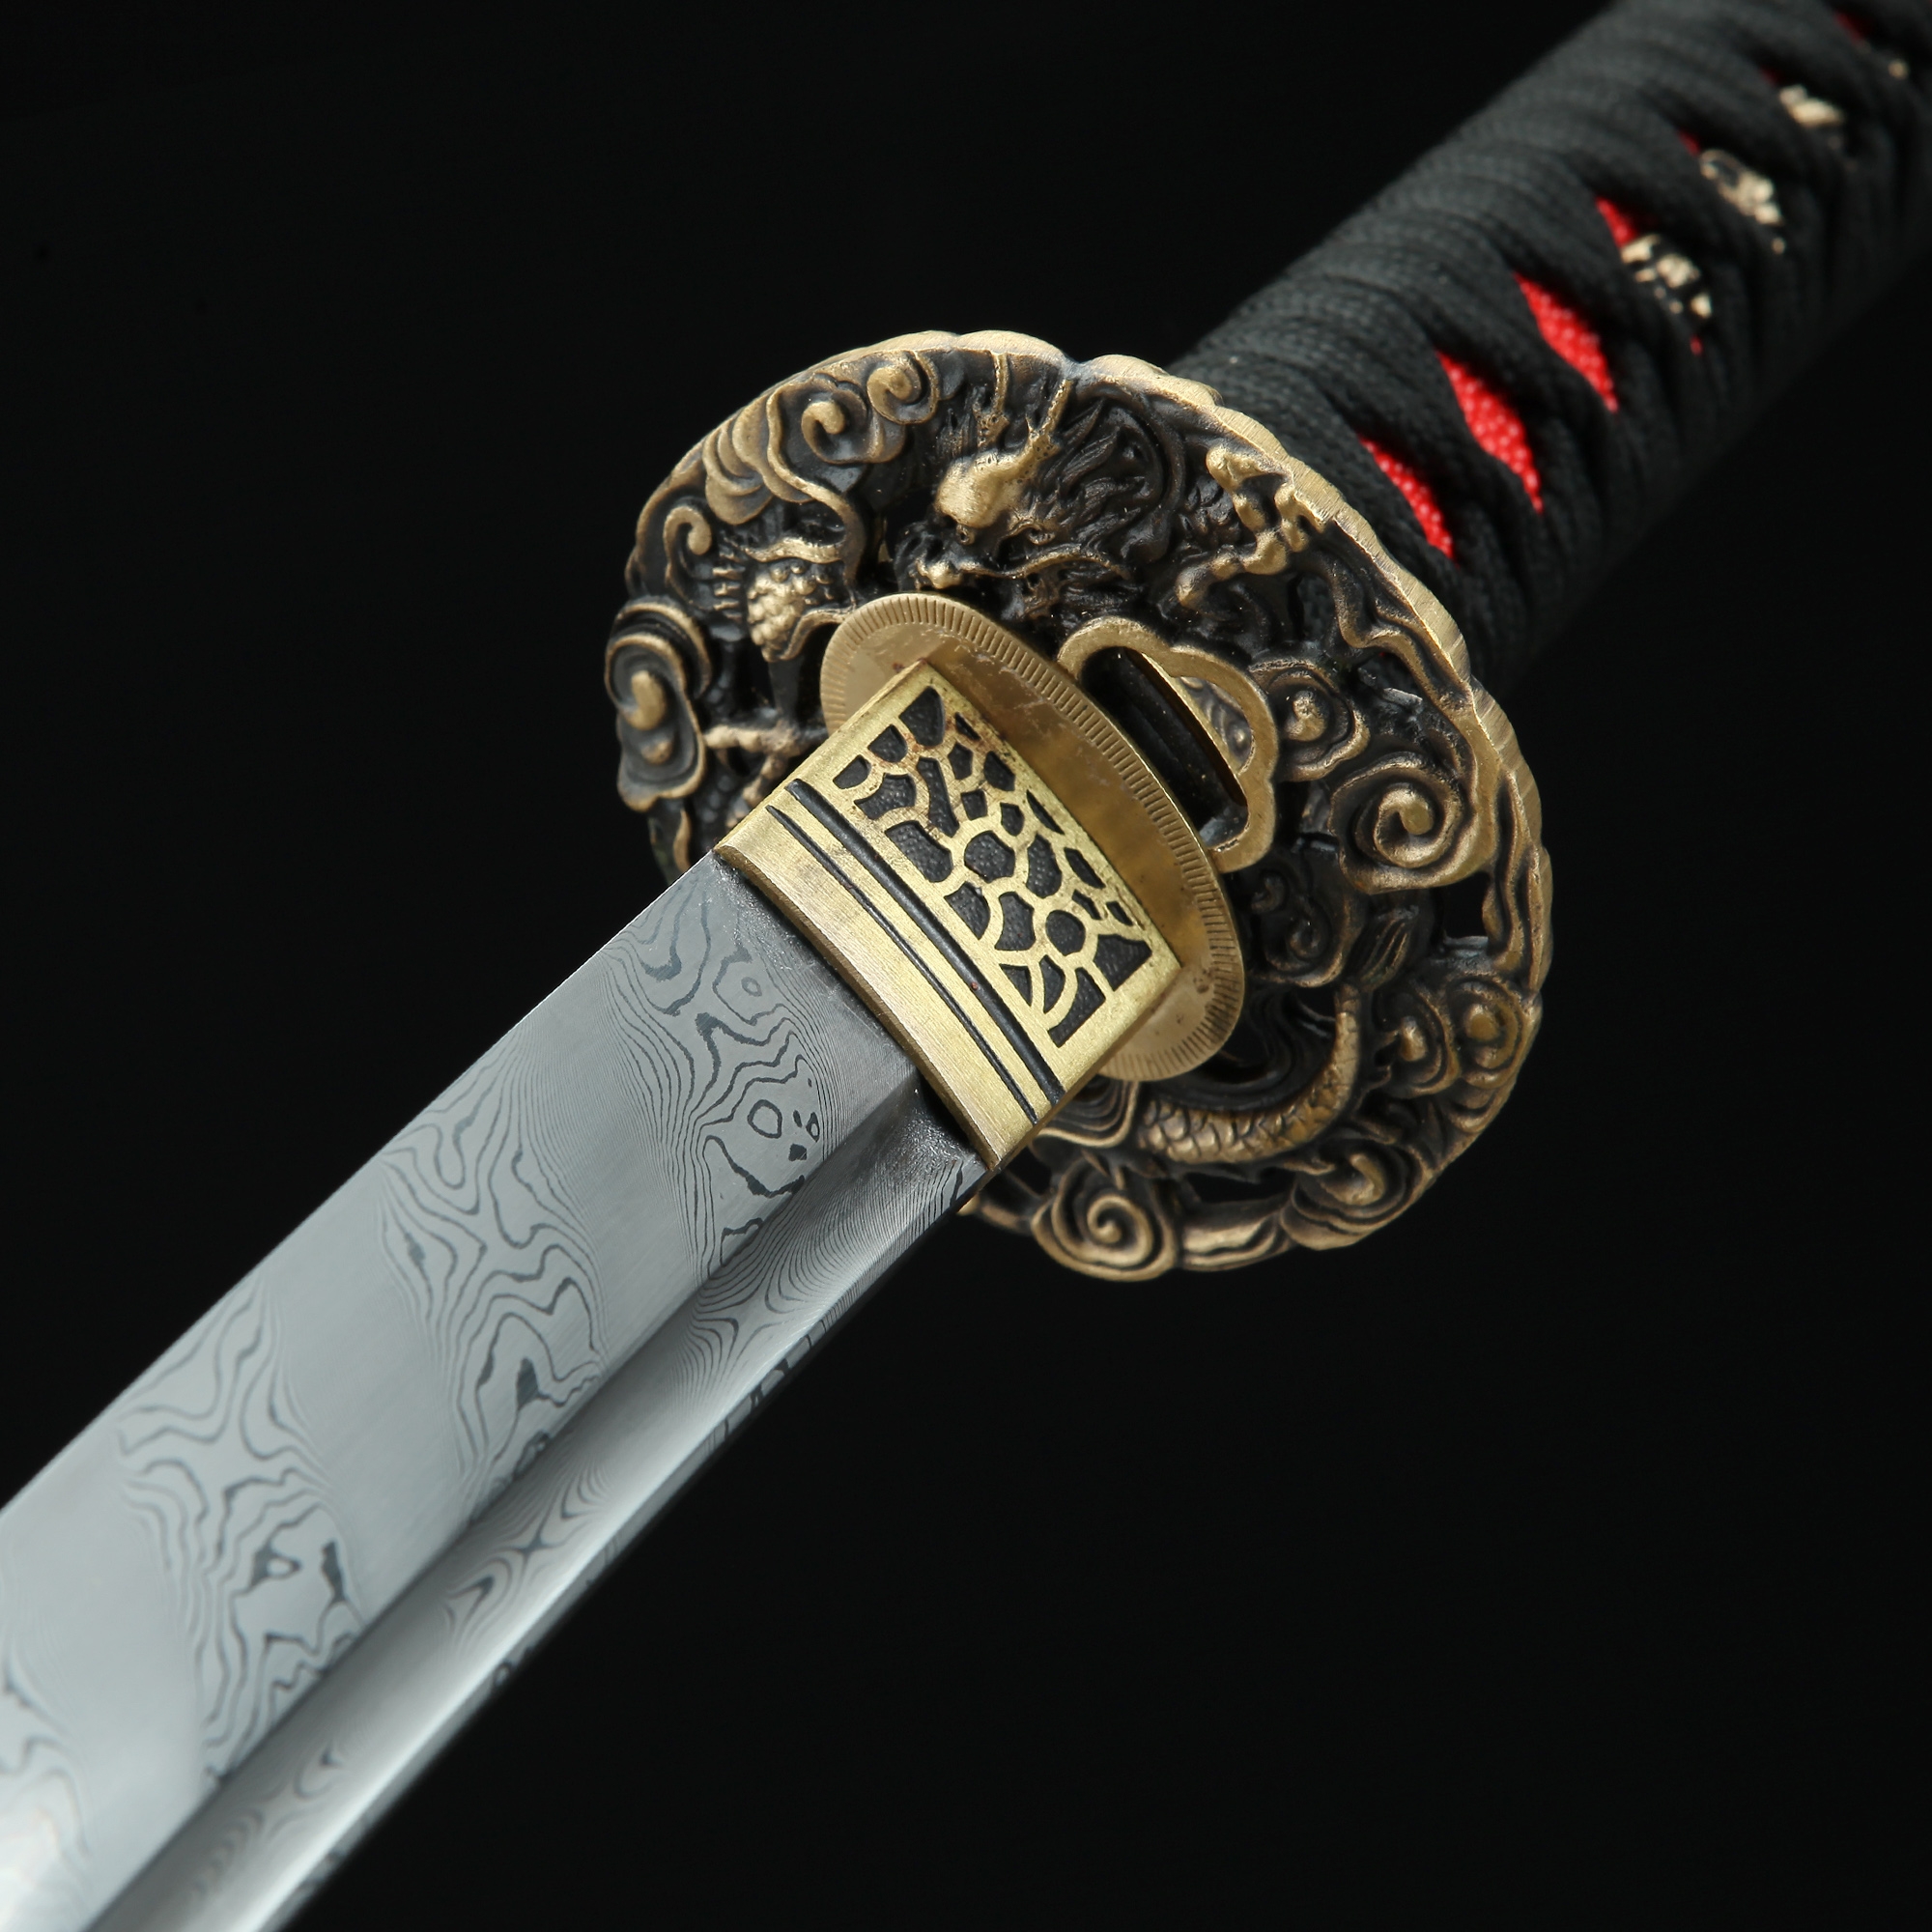 authentic katana sword